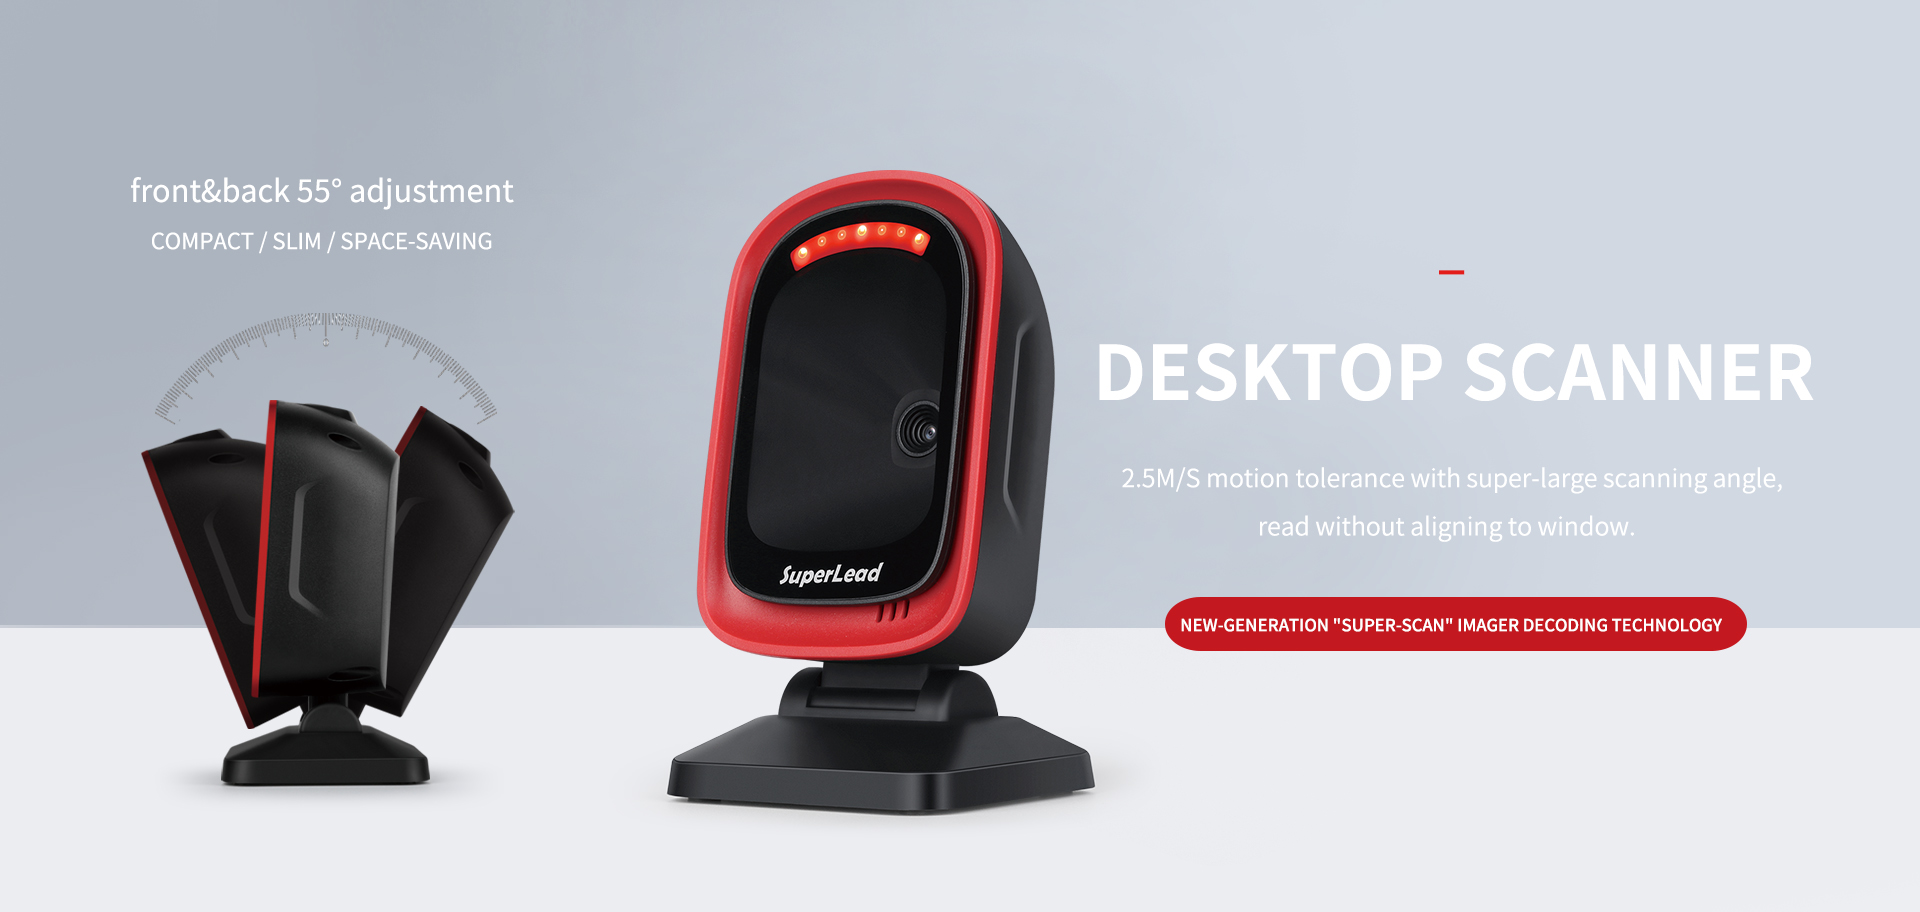 Superlead-Professional Desktop Barcode Scanner Designer and Manufacturer